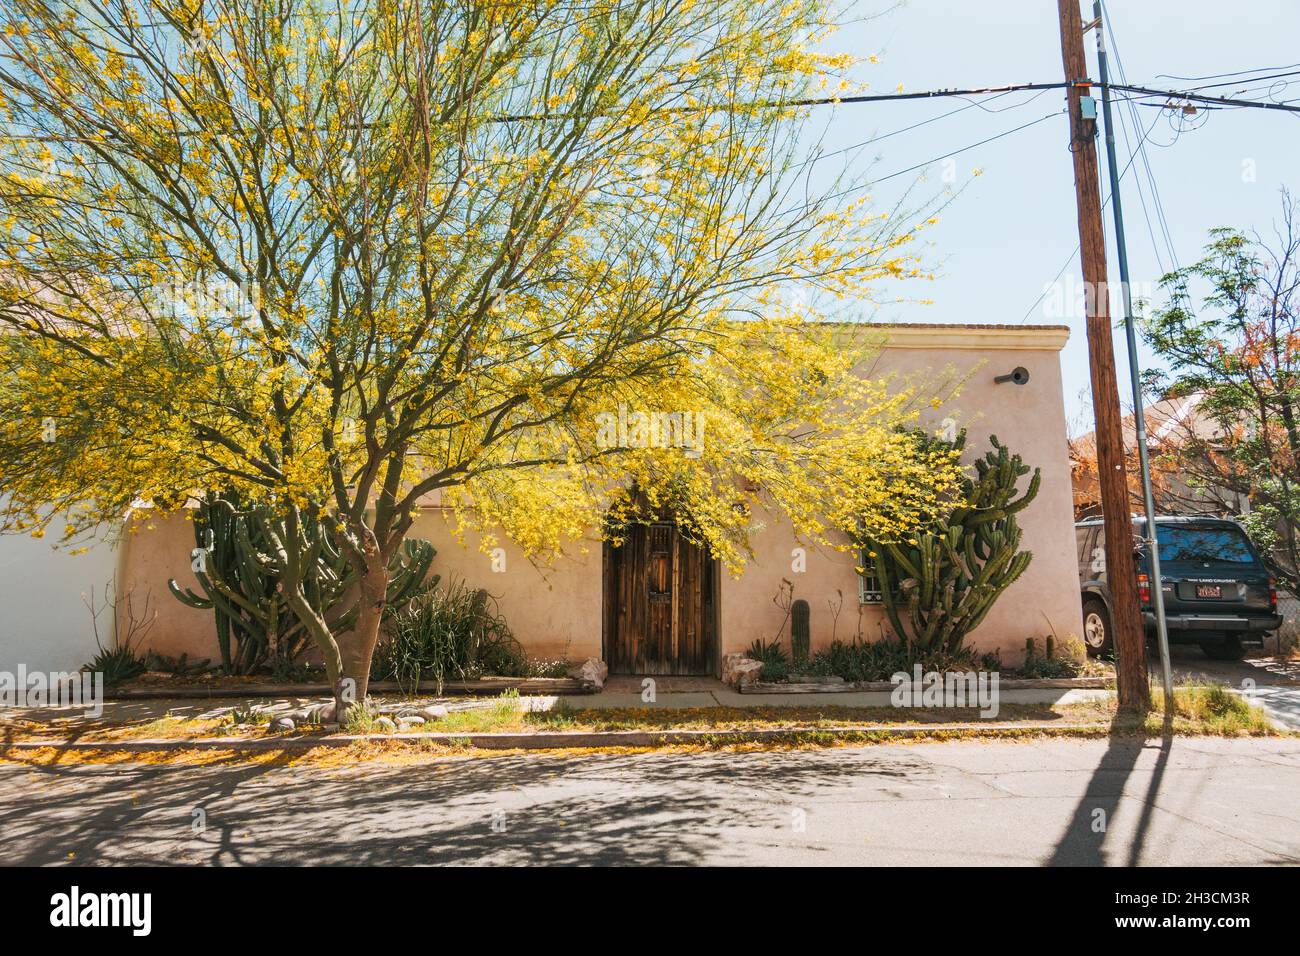 Un arbre aux tons de fleurs jaunes une maison en adobe avec une grande porte en bois à Barrio Viejo, Tucson, AZ Banque D'Images